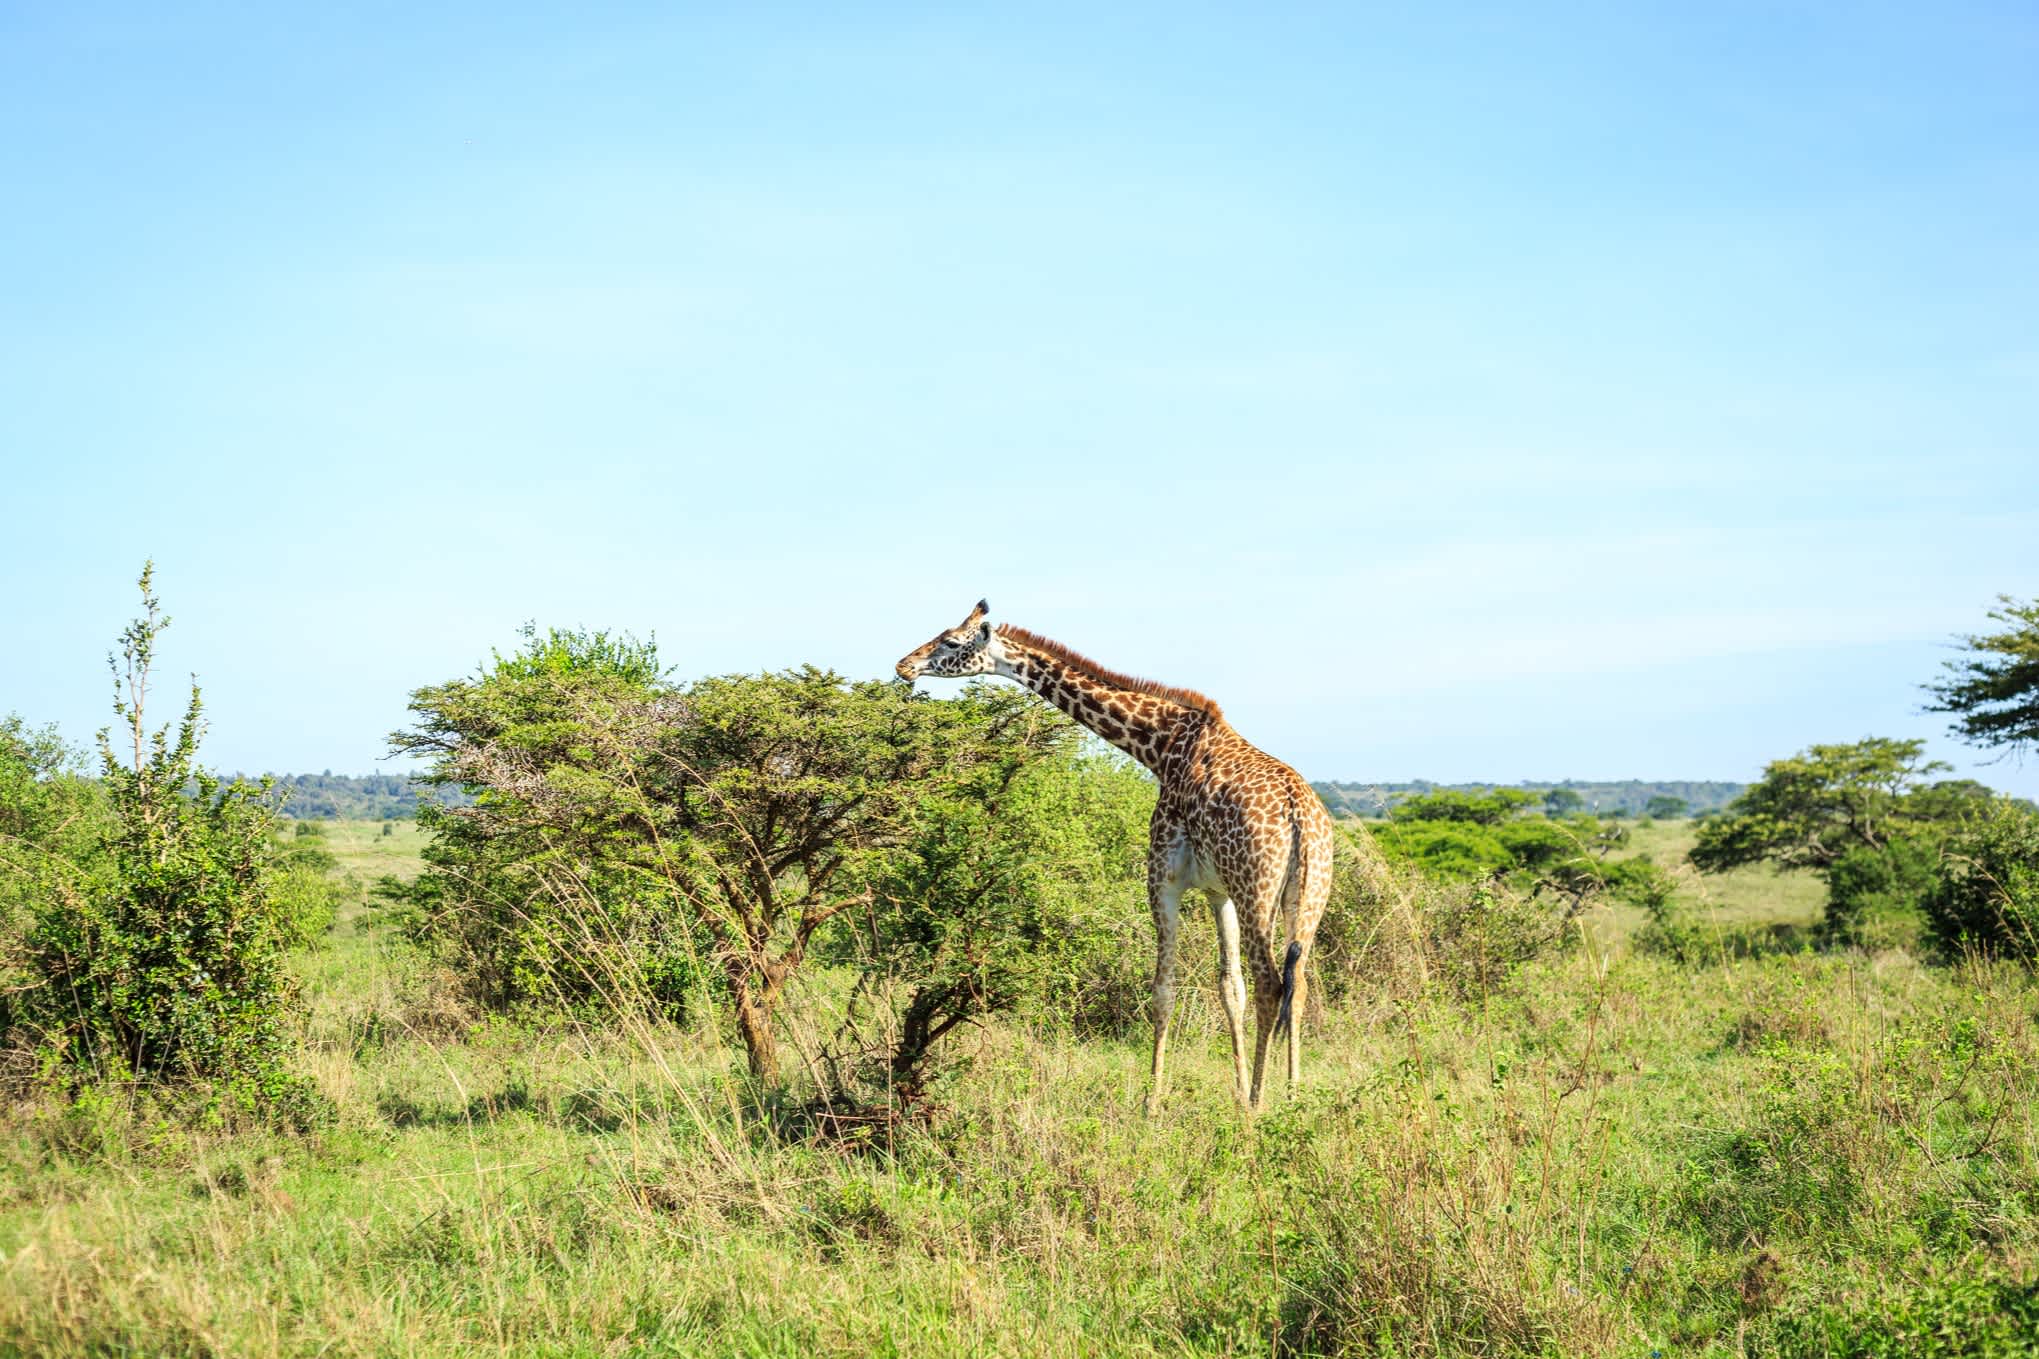 Giraffe frisst laub am Baum